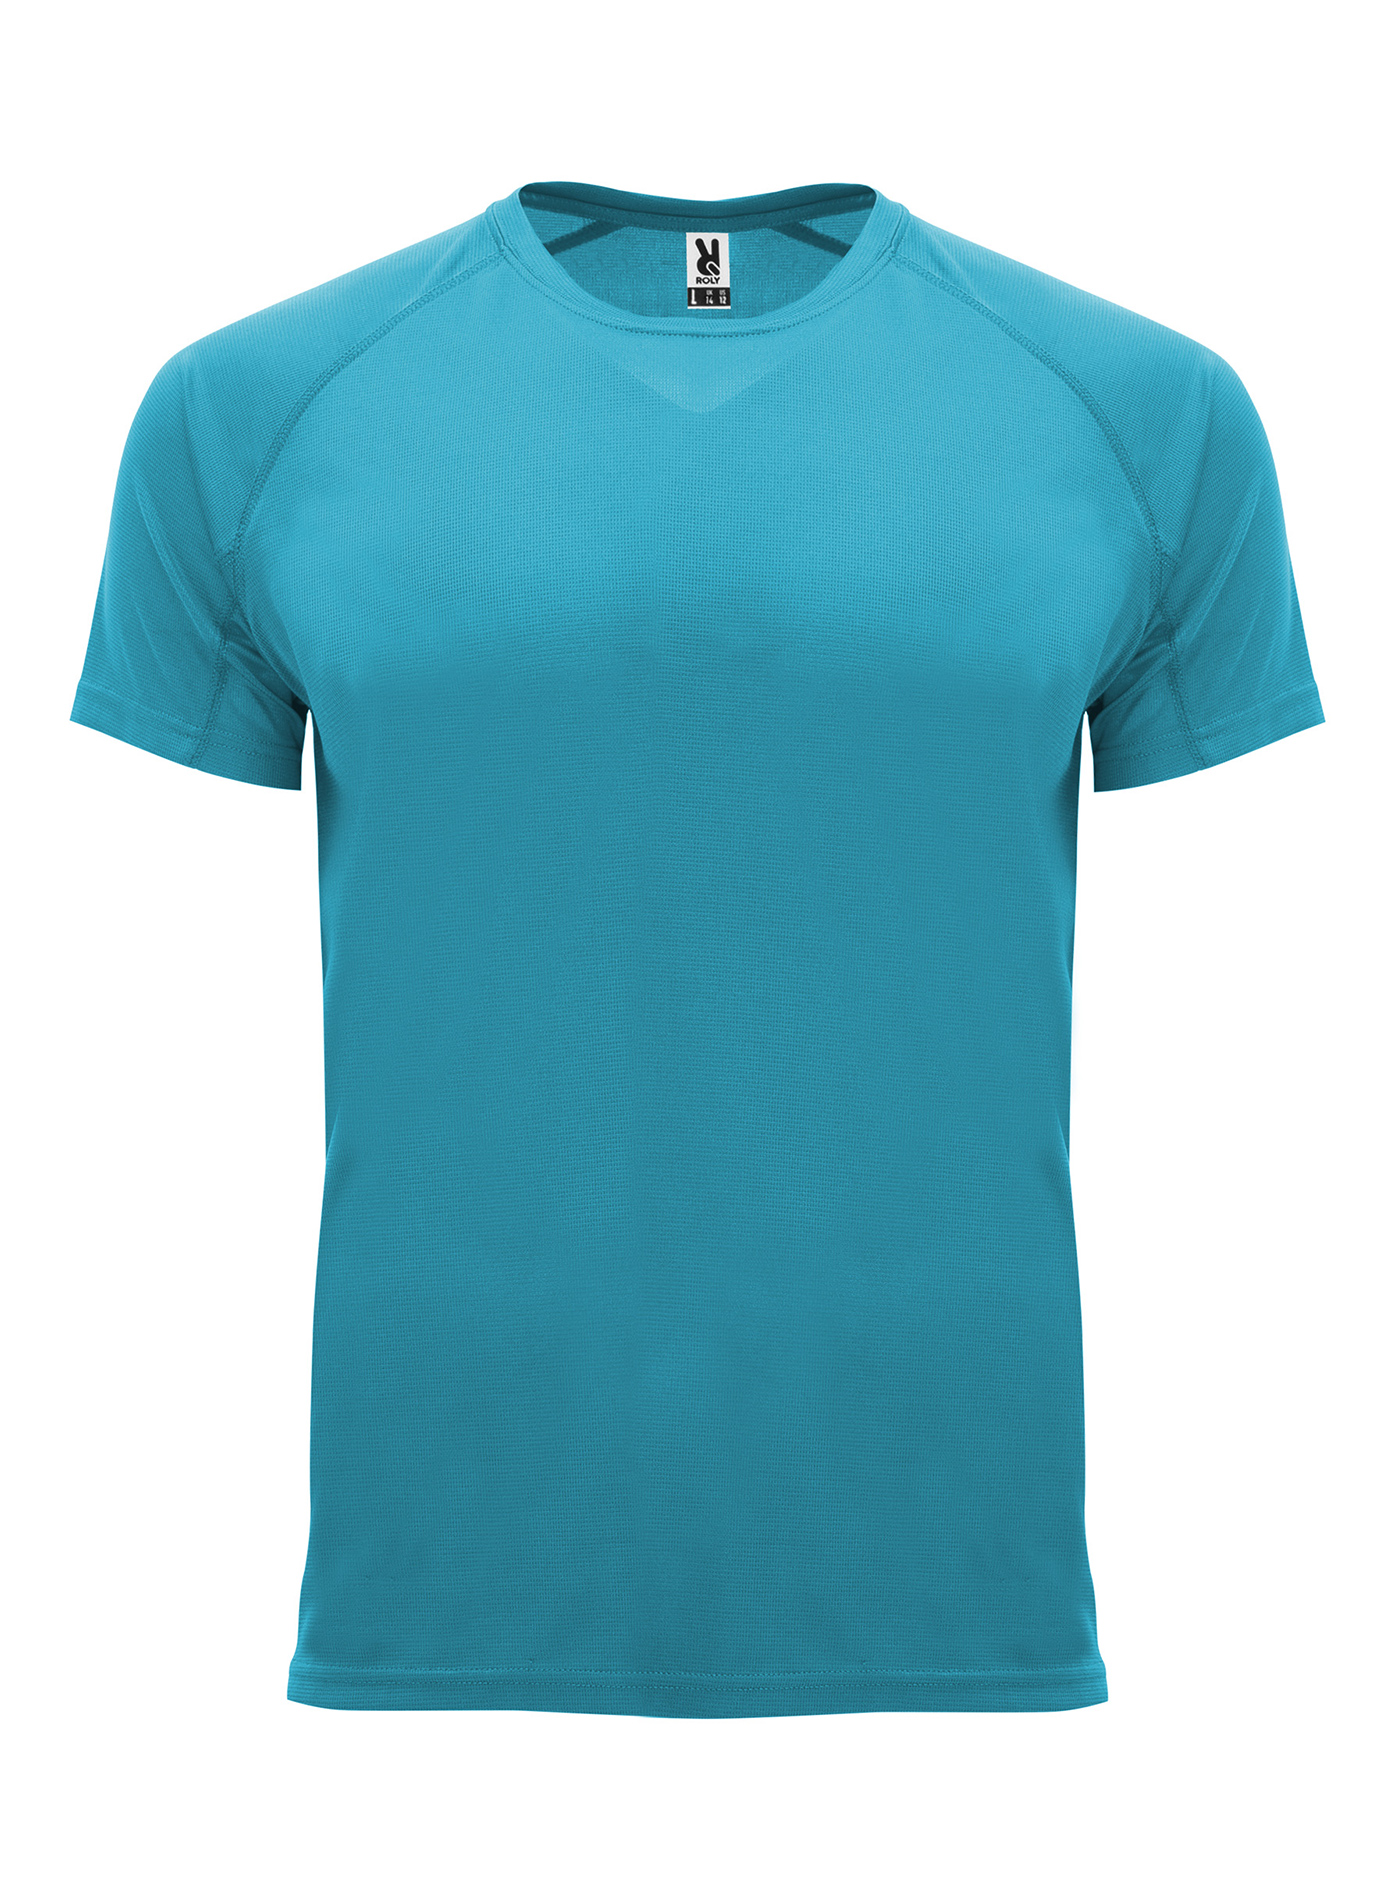 Pánské sportovní tričko Roly Bahrain - Tyrkysově modrá S